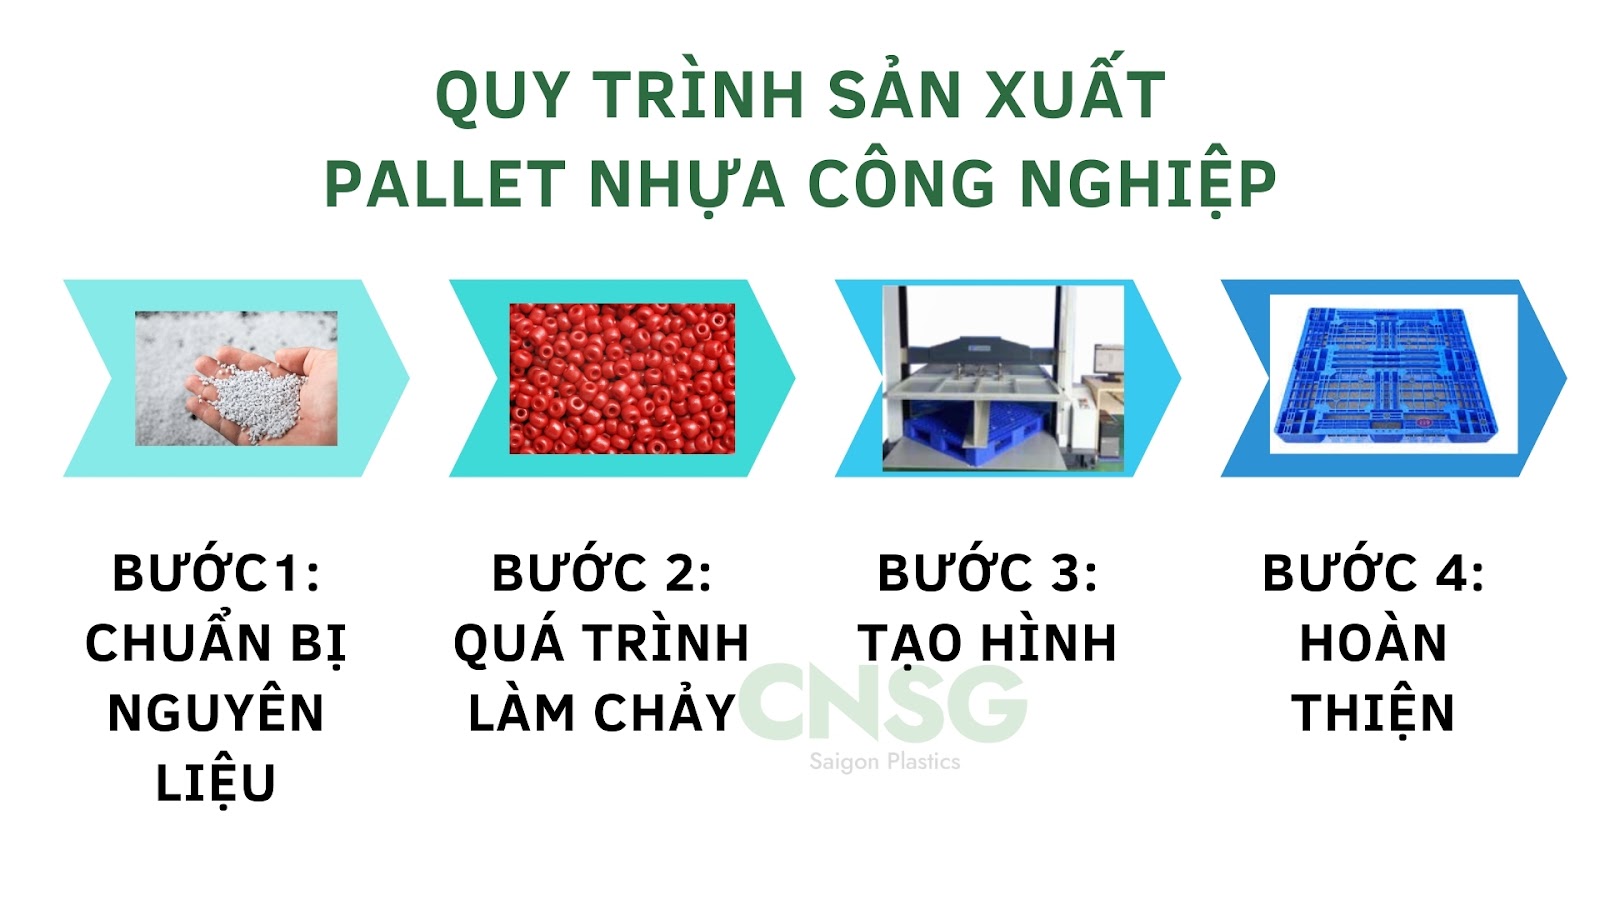 Quy trình sản xuất pallet nhựa công nghiệp | Nhựa Sài Gòn